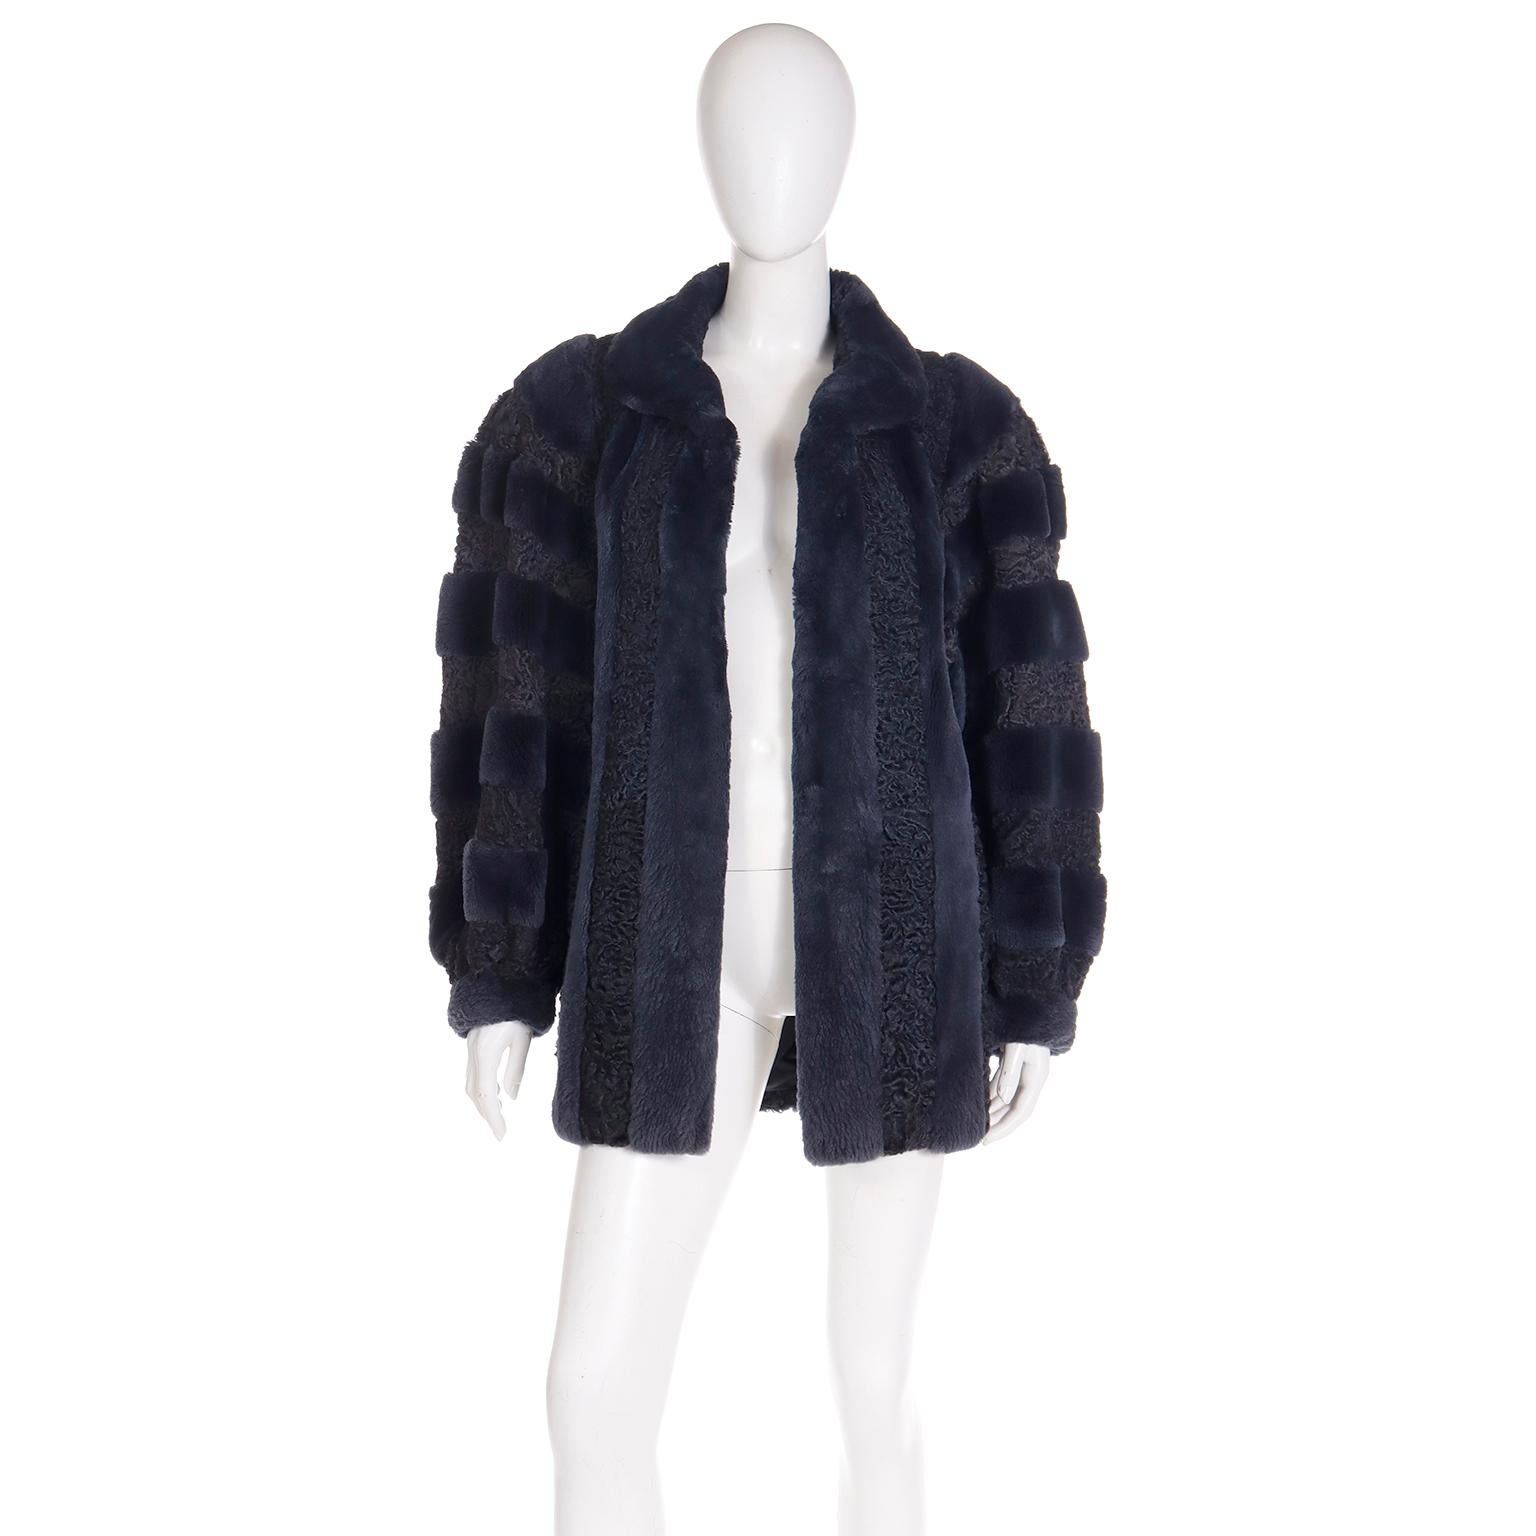 Dies ist ein sehr einzigartiges Vintage 1980's Christian Dior Jacke mit abwechselnden Reihen von Blau gefärbt geschoren Pelz und schwarz persischen Lammwolle. Wir lieben die Art und Weise, wie dieser Mantel konstruiert ist, und das wunderschöne